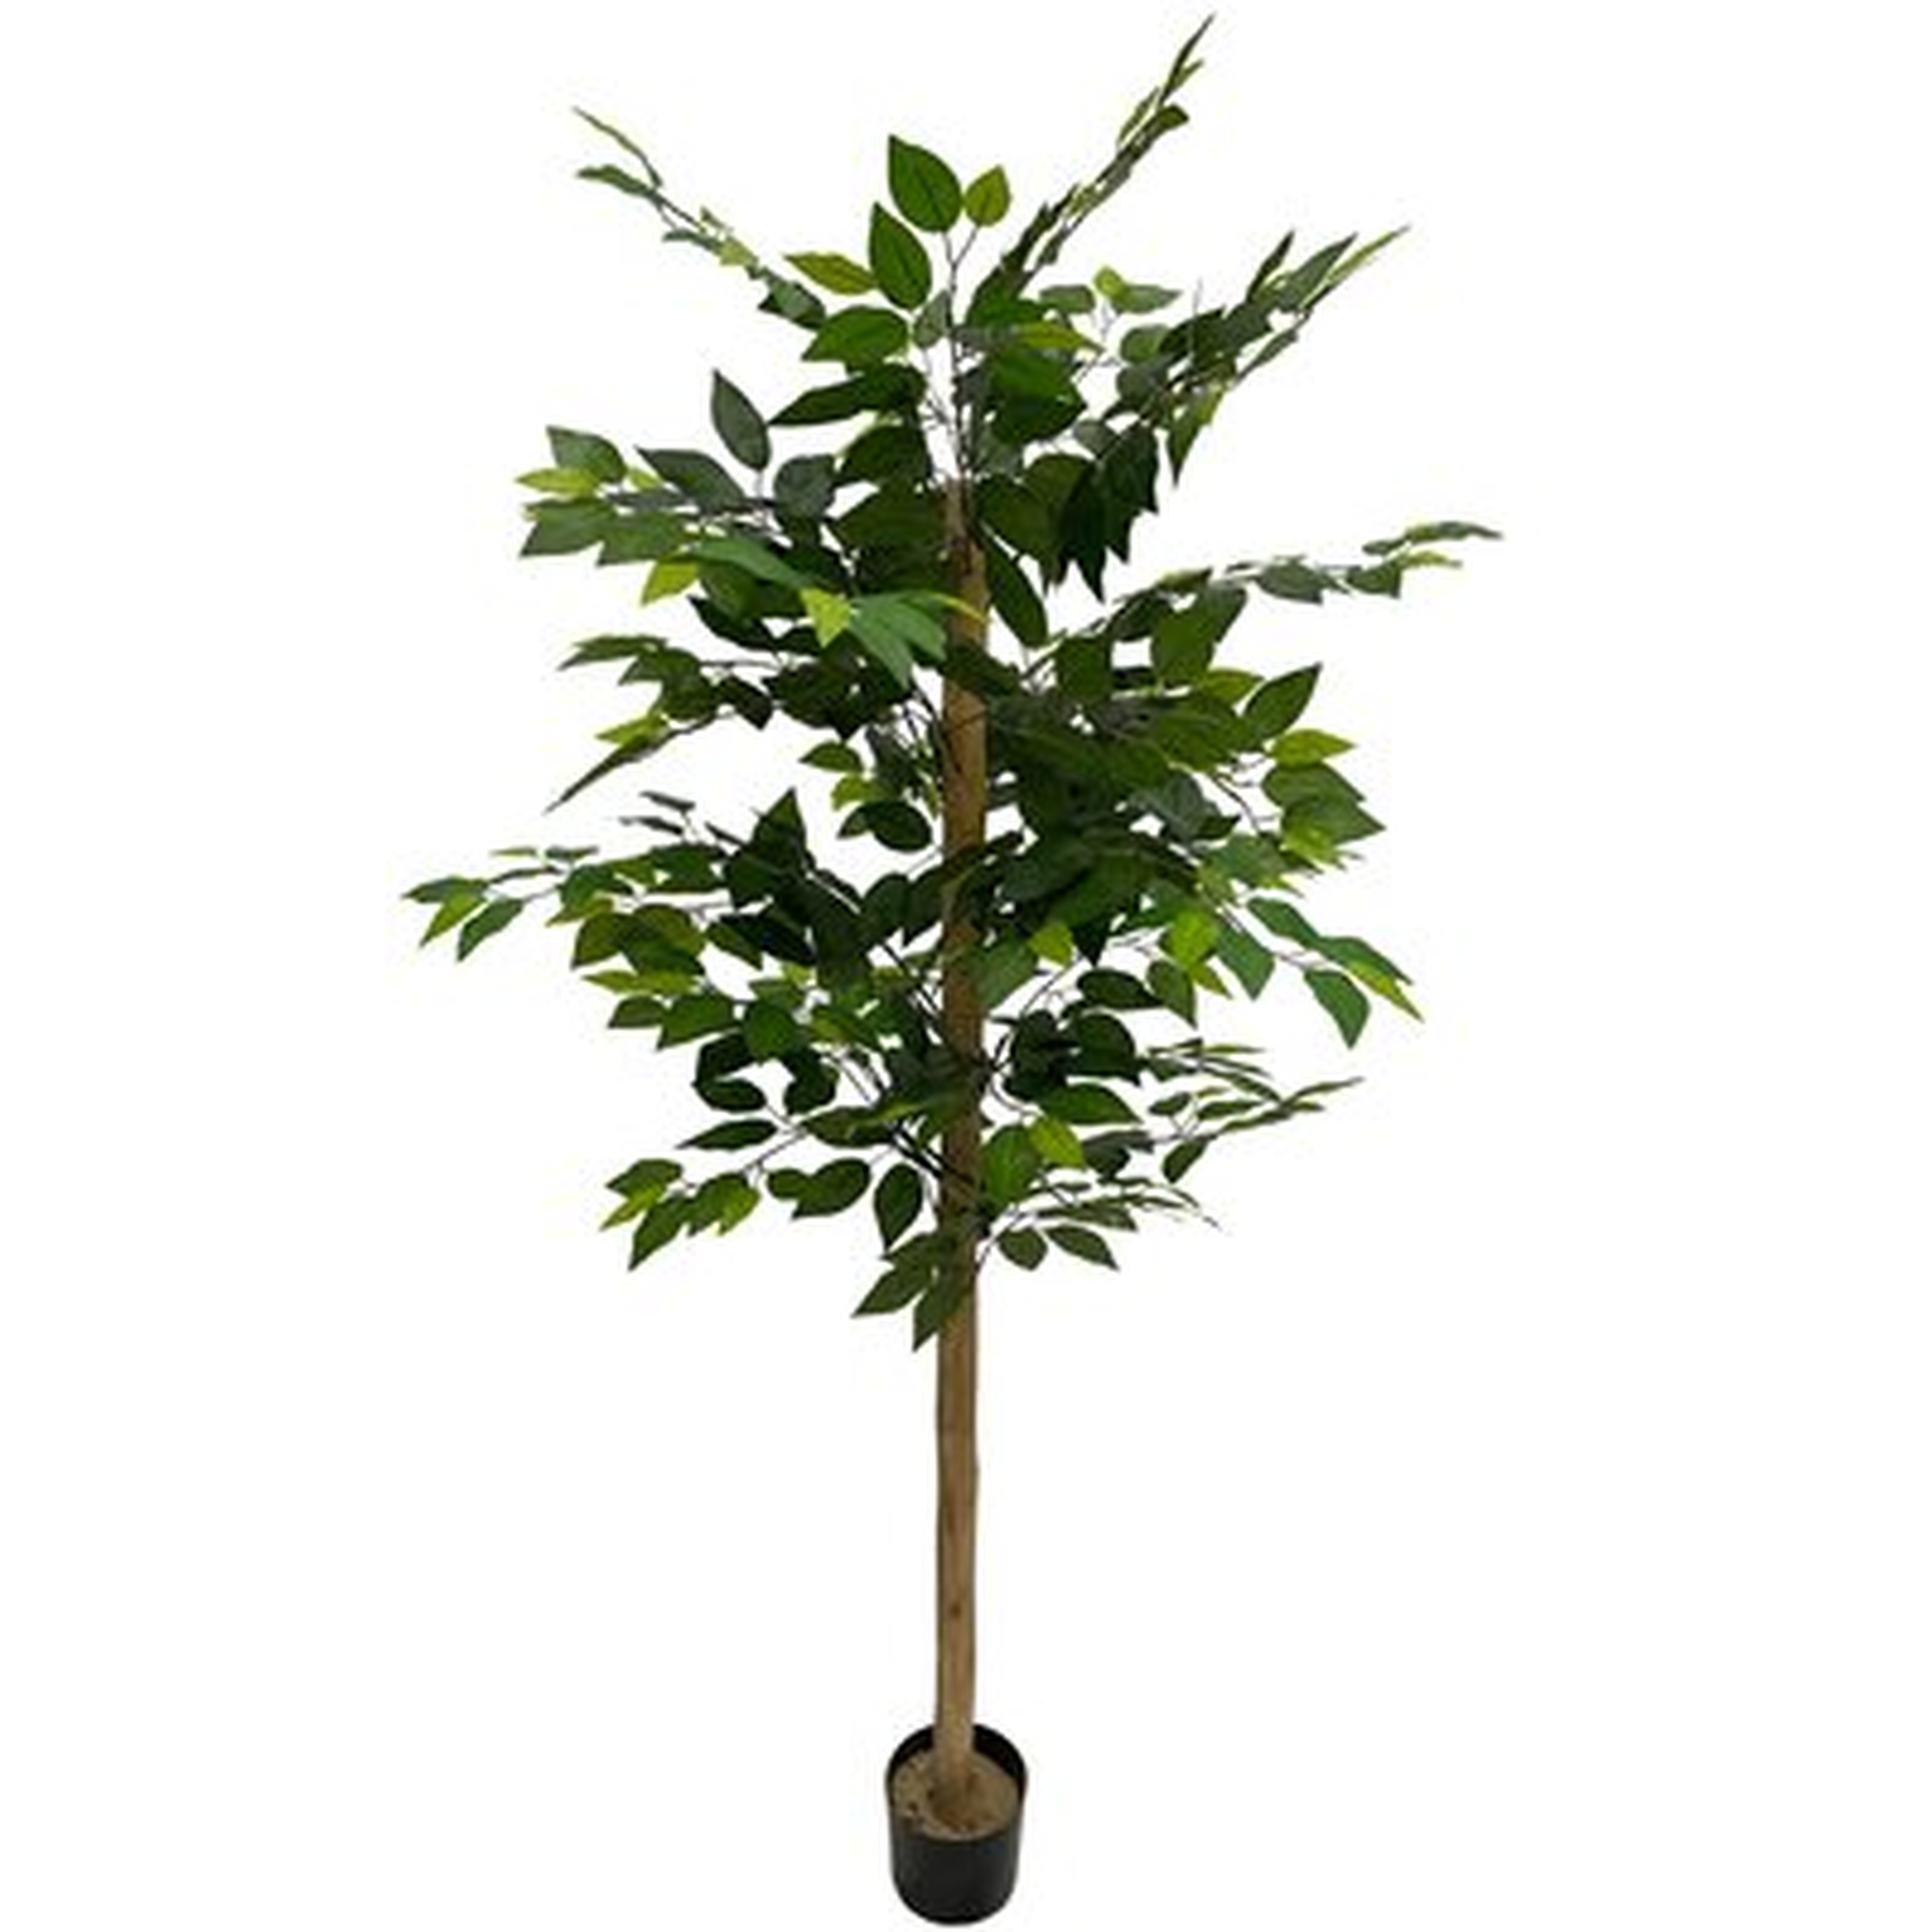 72" Artificial Ficus Tree in Pot - Wayfair